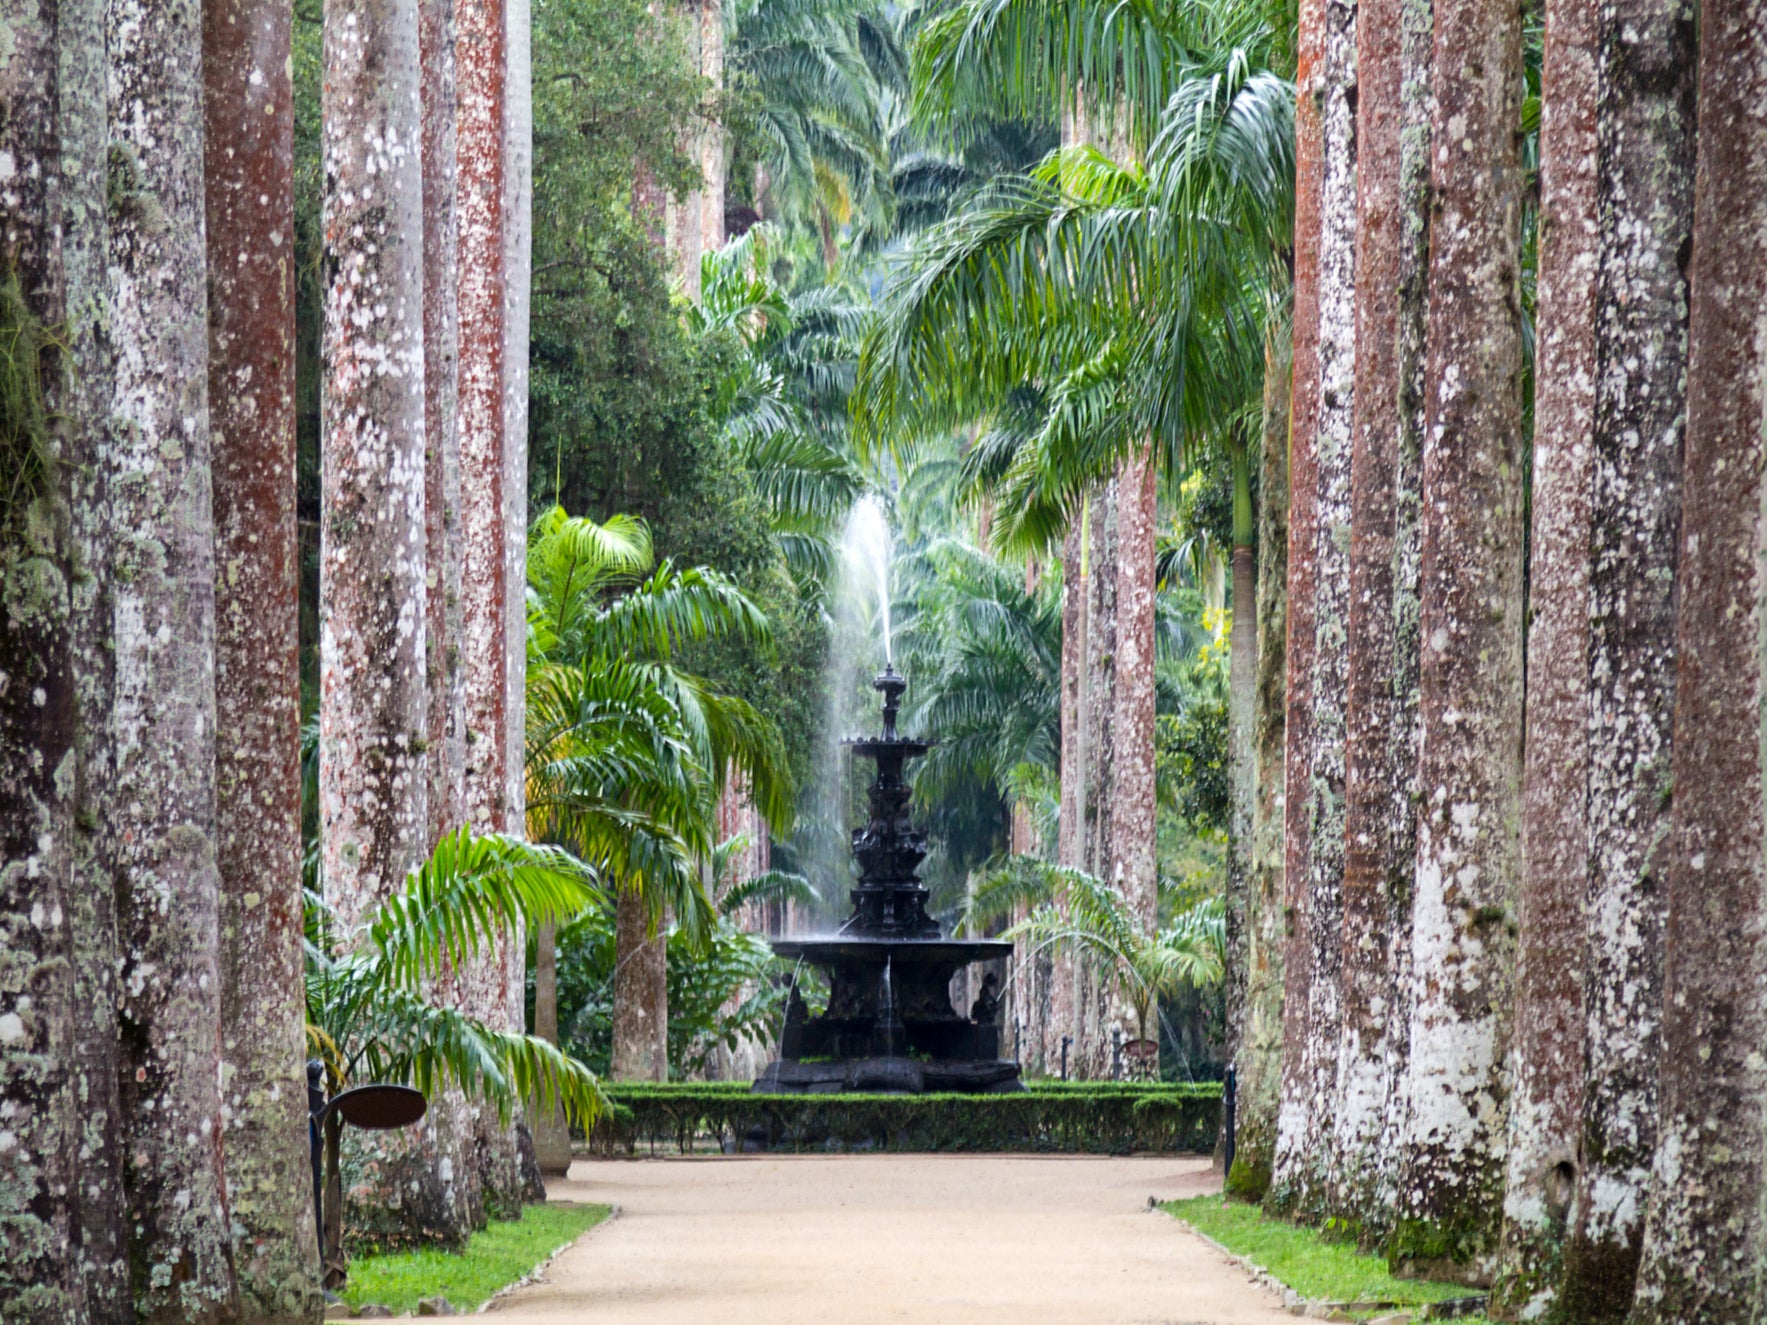 Water fountain at Jardim Botanico in Rio de Janeiro